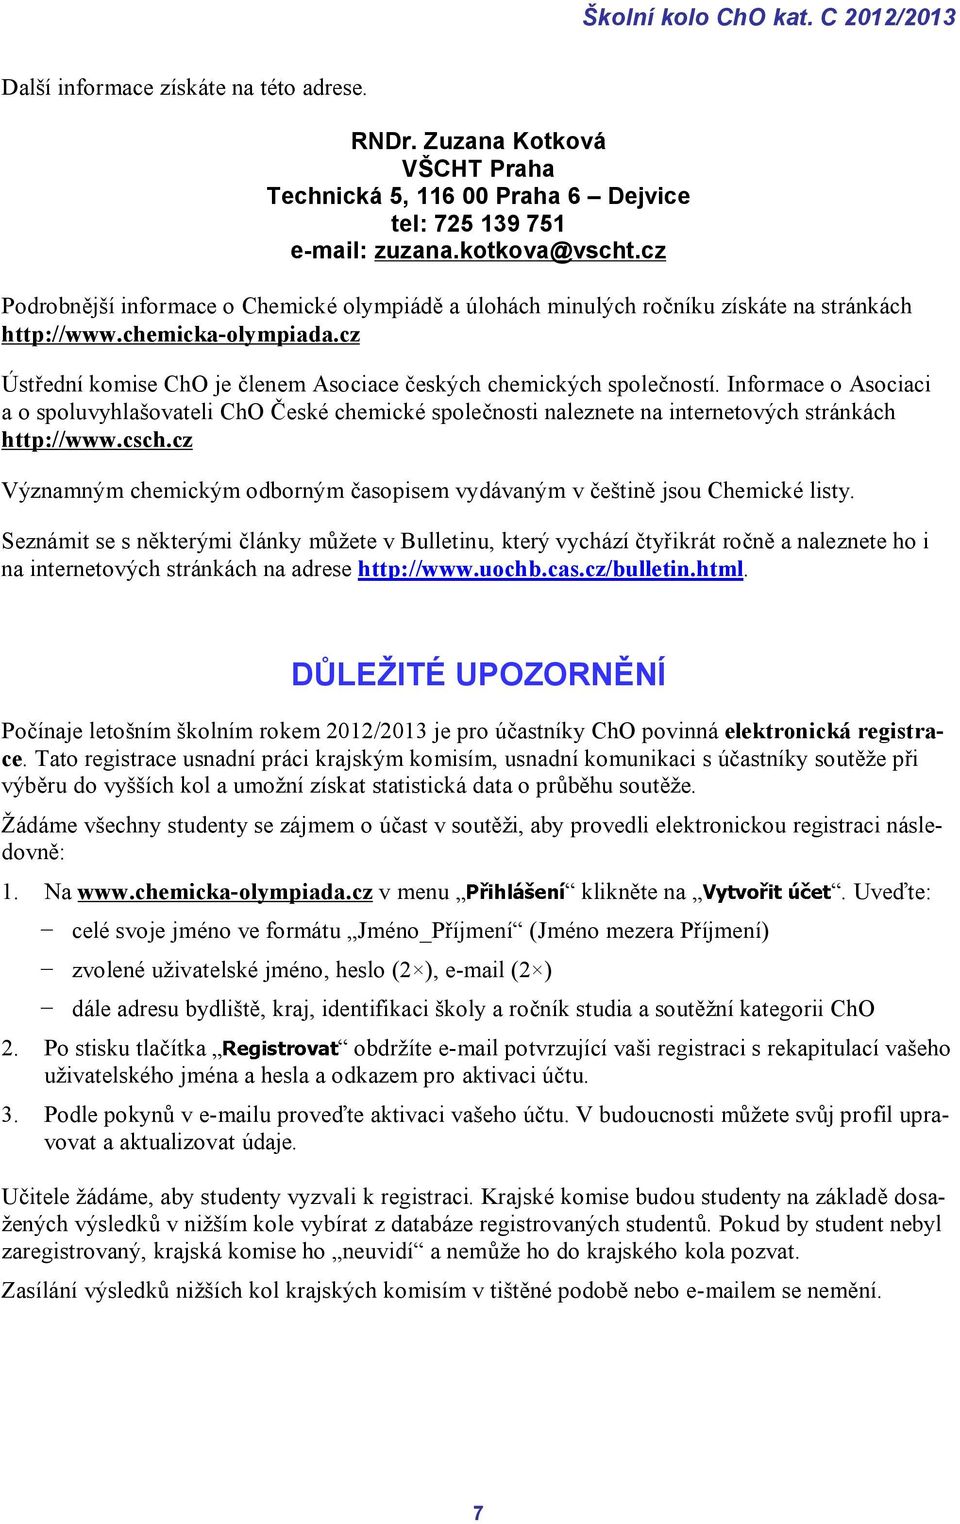 Informace o Asociaci a o spoluvyhlašovateli ChO České chemické společnosti naleznete na internetových stránkách http://www.csch.